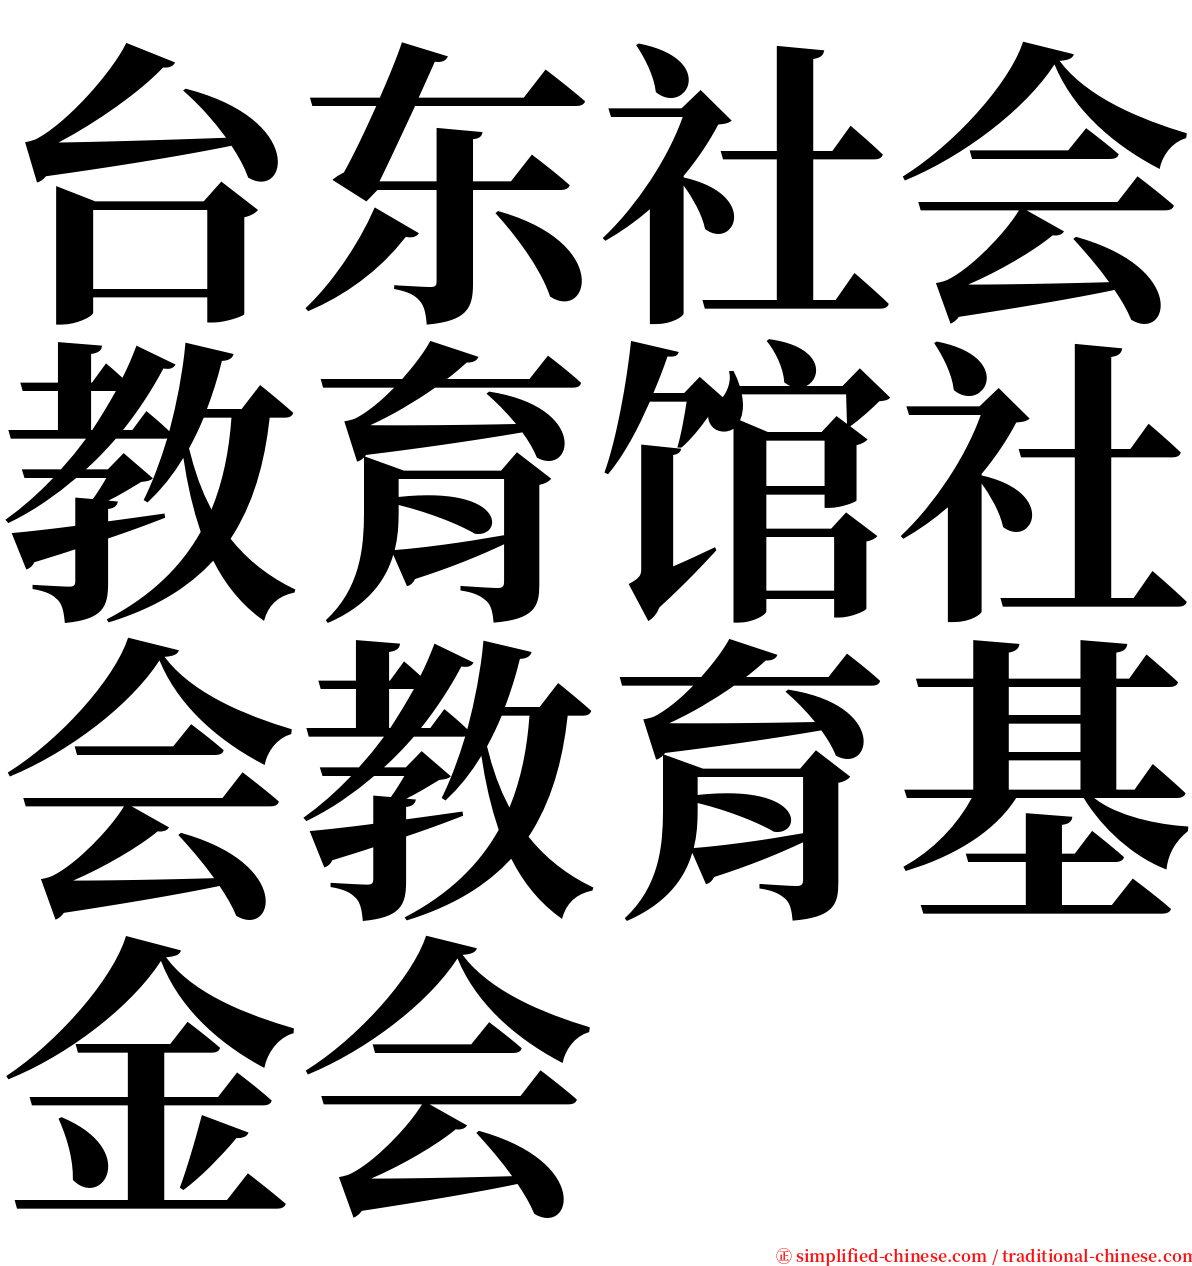 台东社会教育馆社会教育基金会 serif font